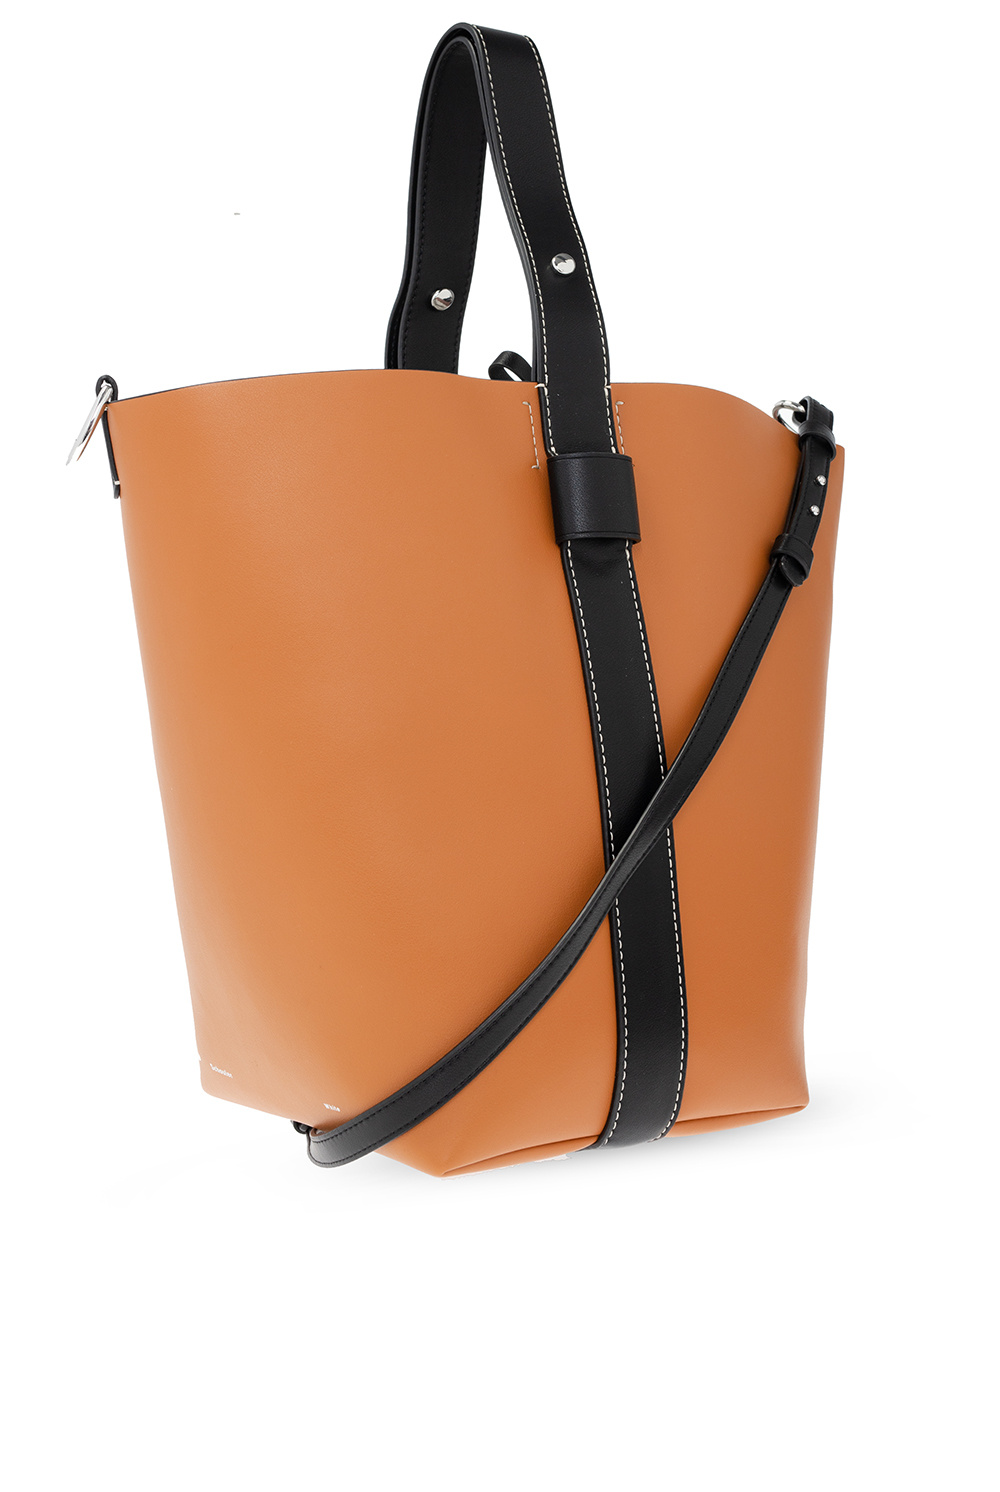 PROENZA SCHOULER RIBBED DRESS ‘Sullivan’ leather shoulder bag